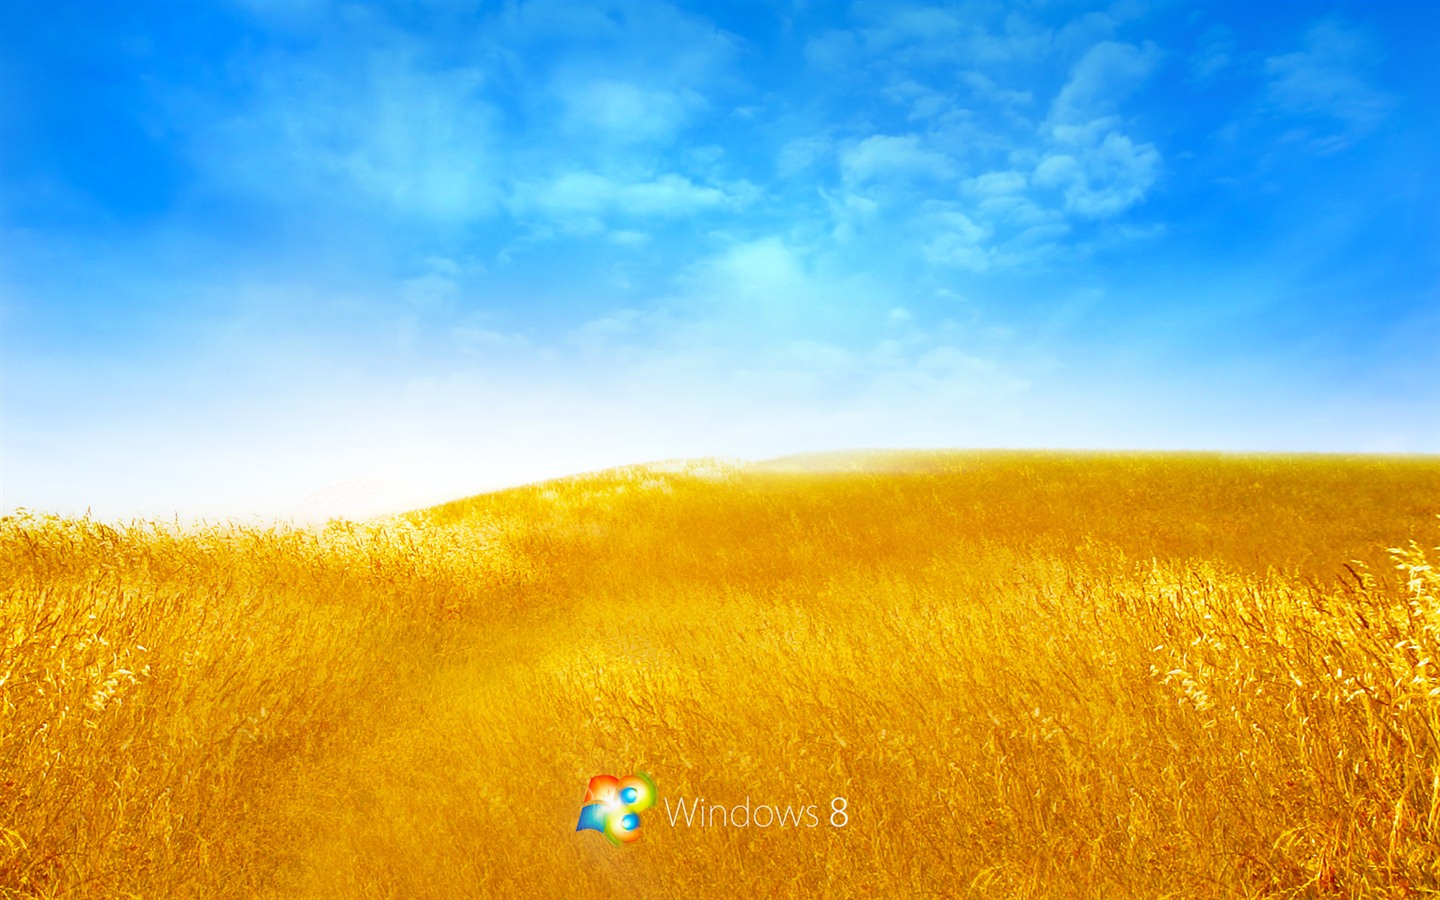 Windows 8 Theme Wallpaper (2) #16 - 1440x900